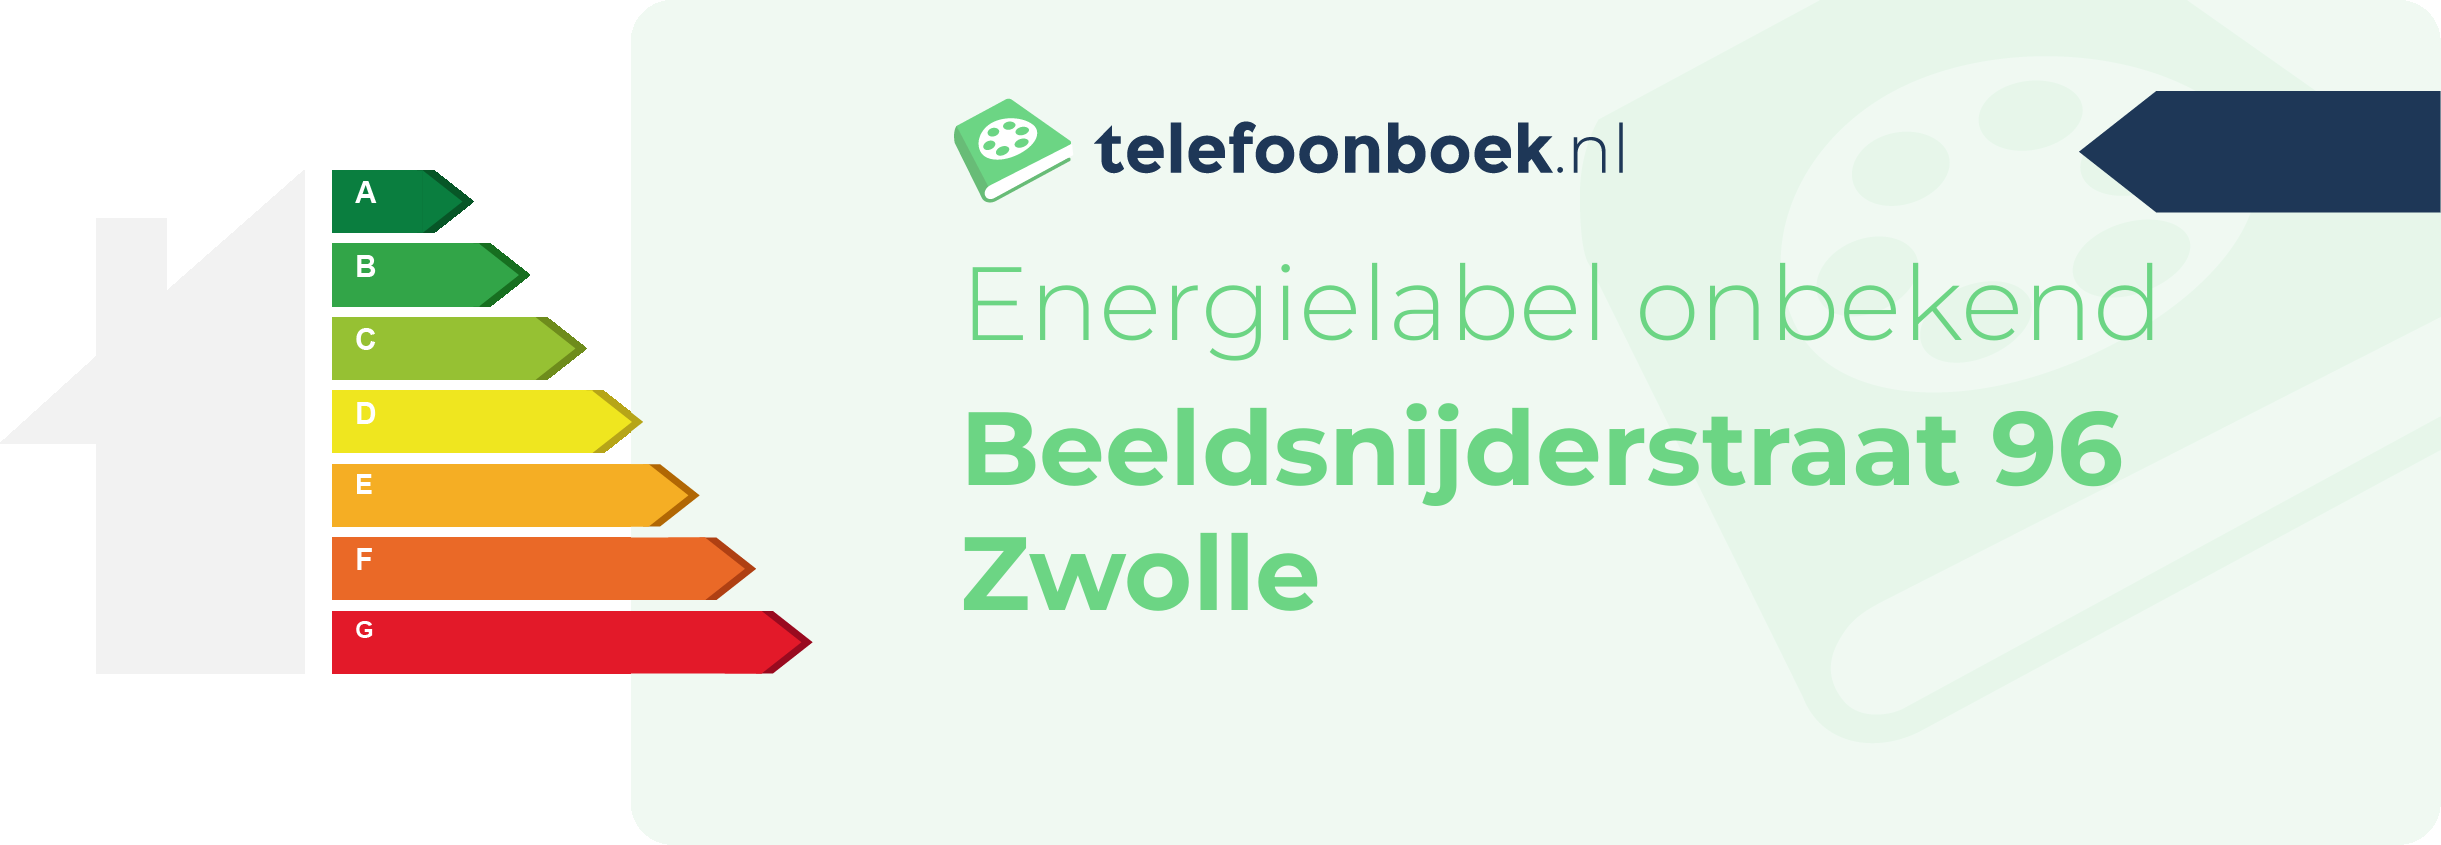 Energielabel Beeldsnijderstraat 96 Zwolle